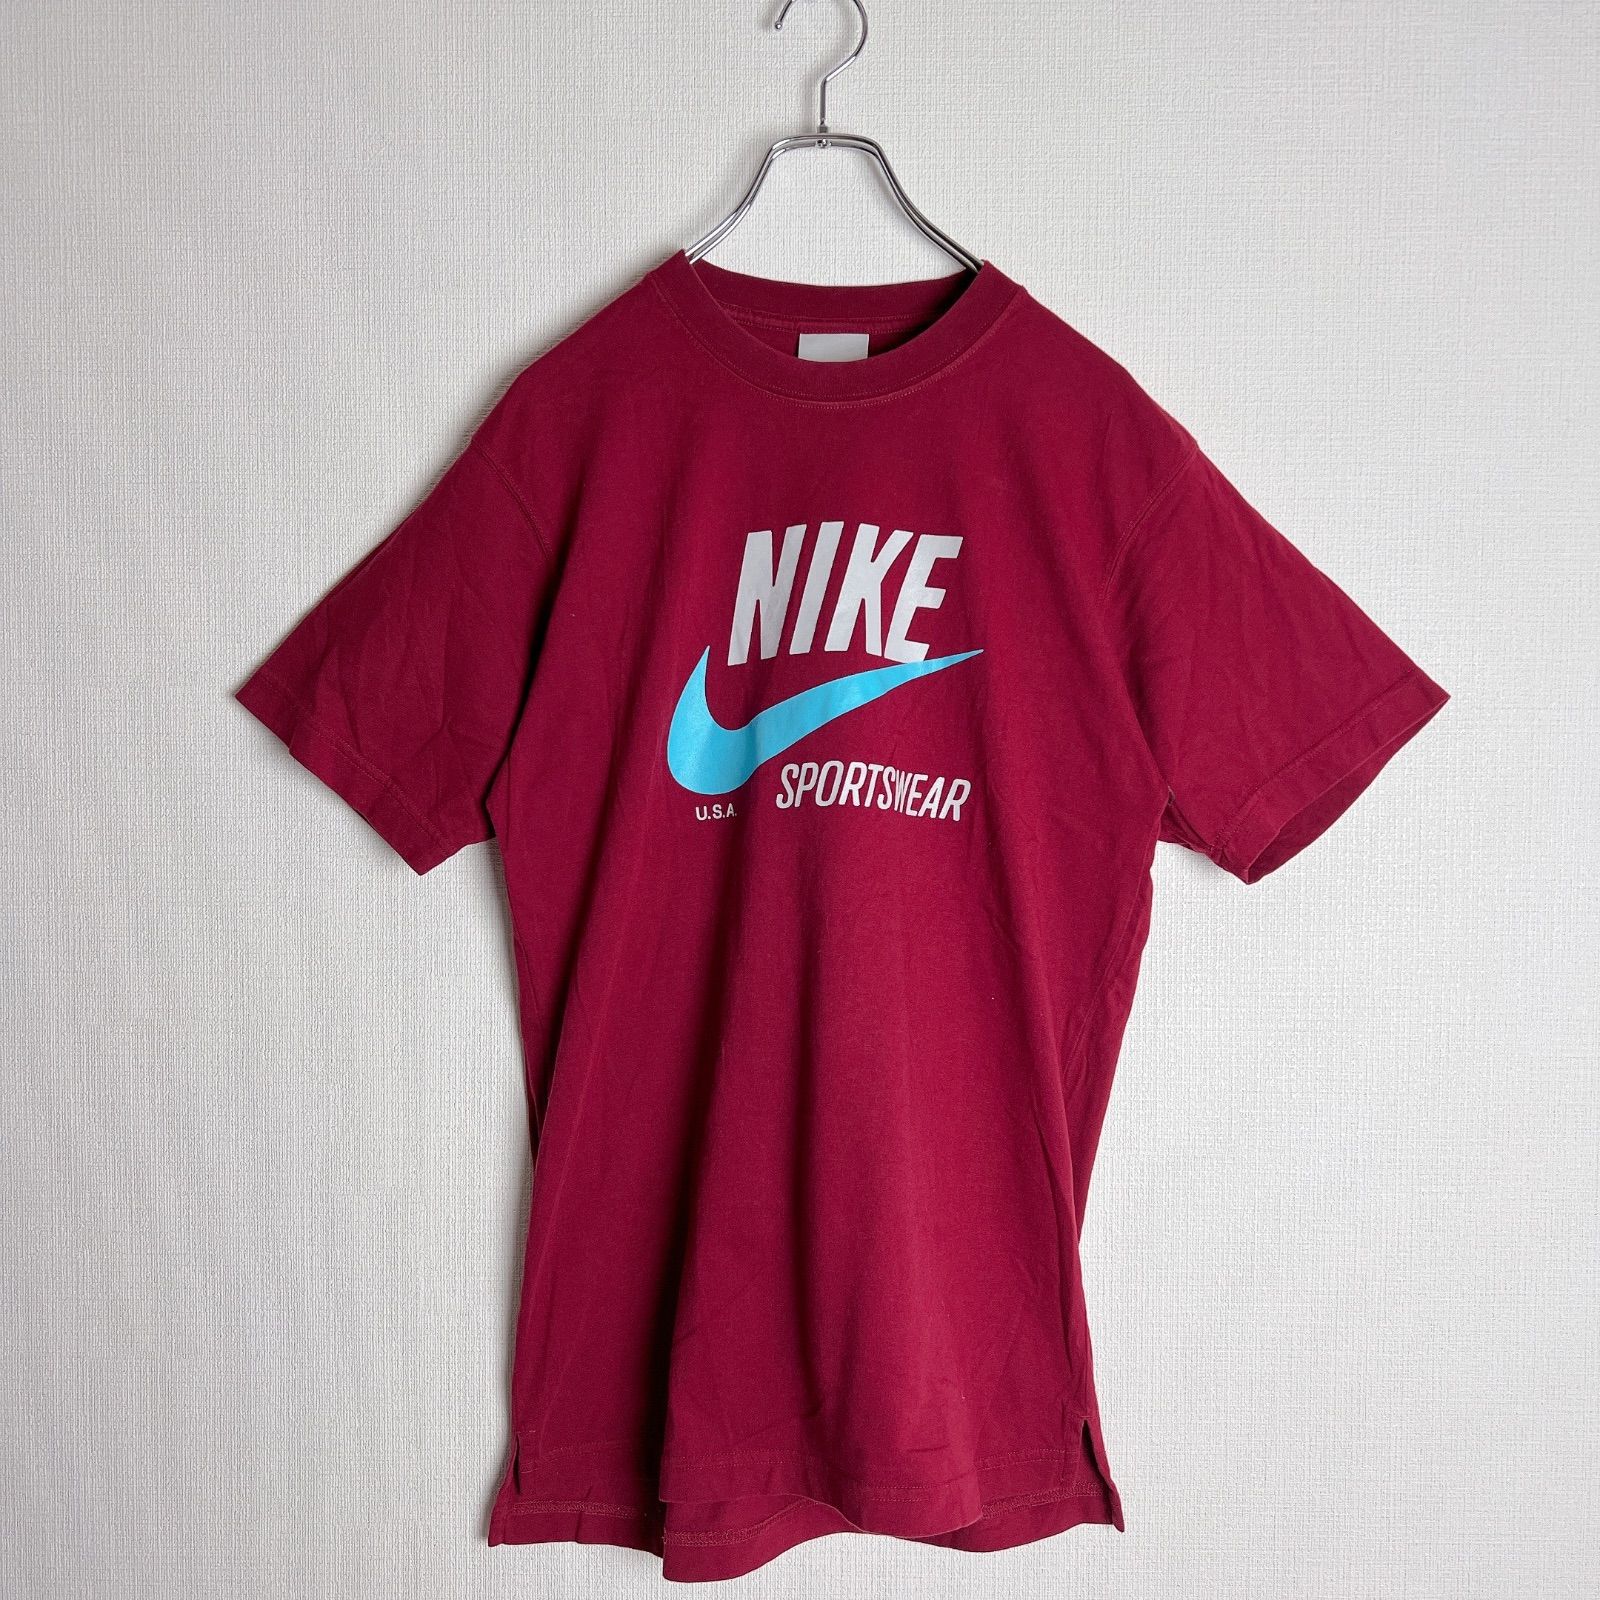 NIKE Tシャツ Mサイズ - トップス